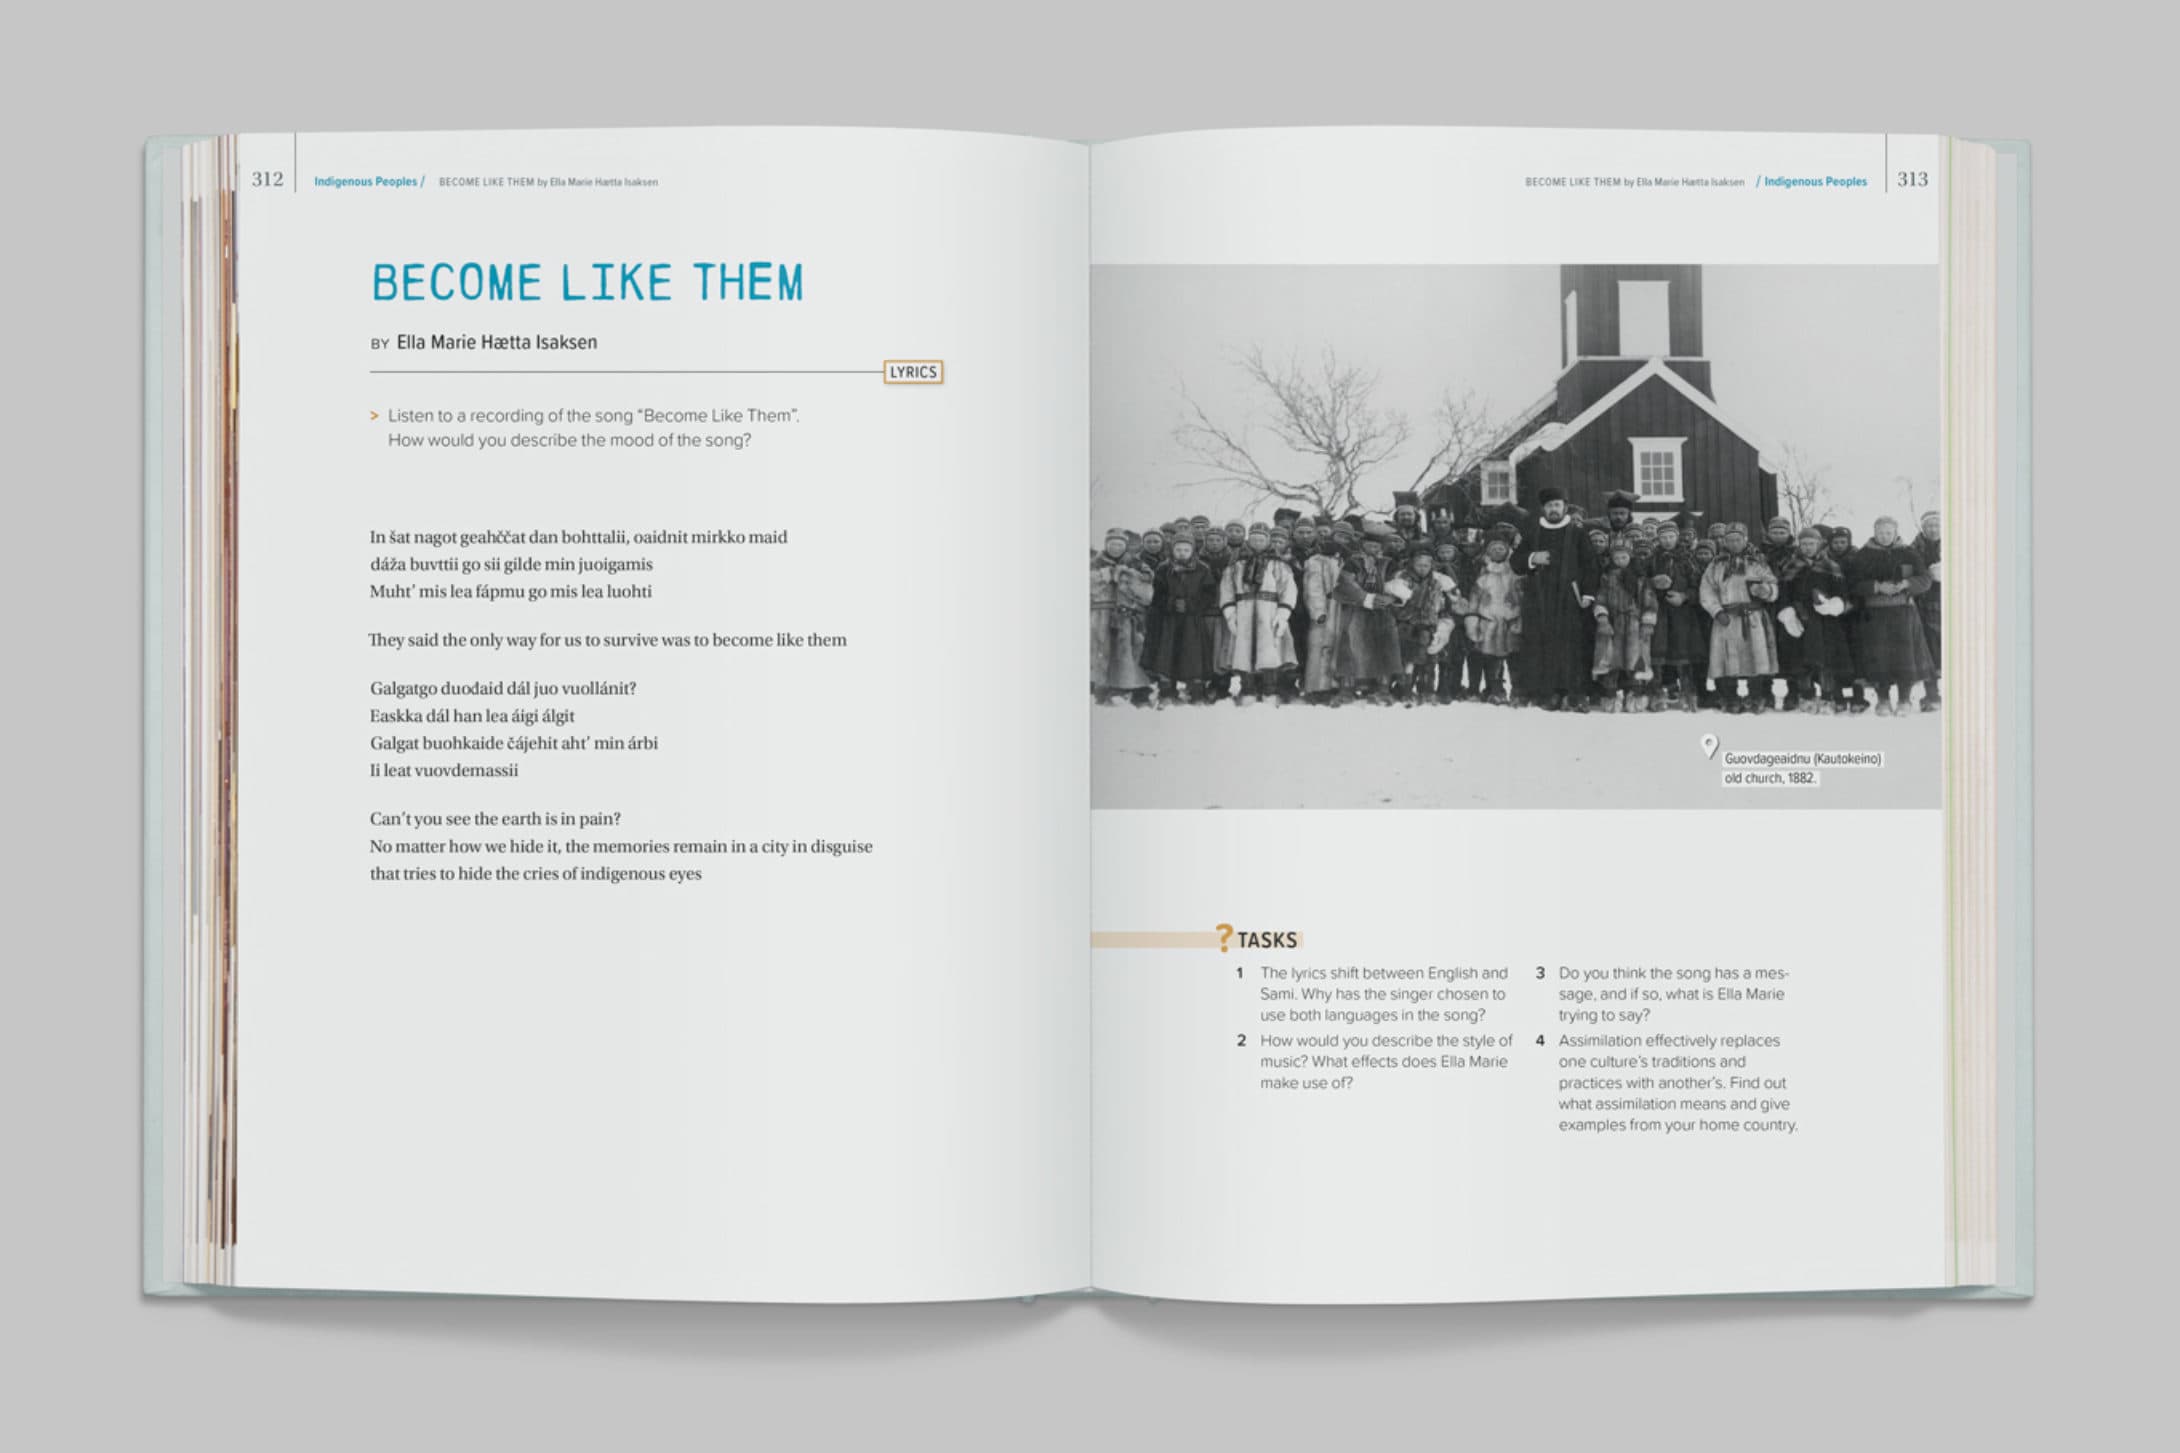 Bildet viser et oppslag i boken Echo. På venstre side er det en kapitteloverskrift og en sangtekst. På høyre side er det et bilde av en gruppe mennesker foran et hus, og en oppgavetekst under.